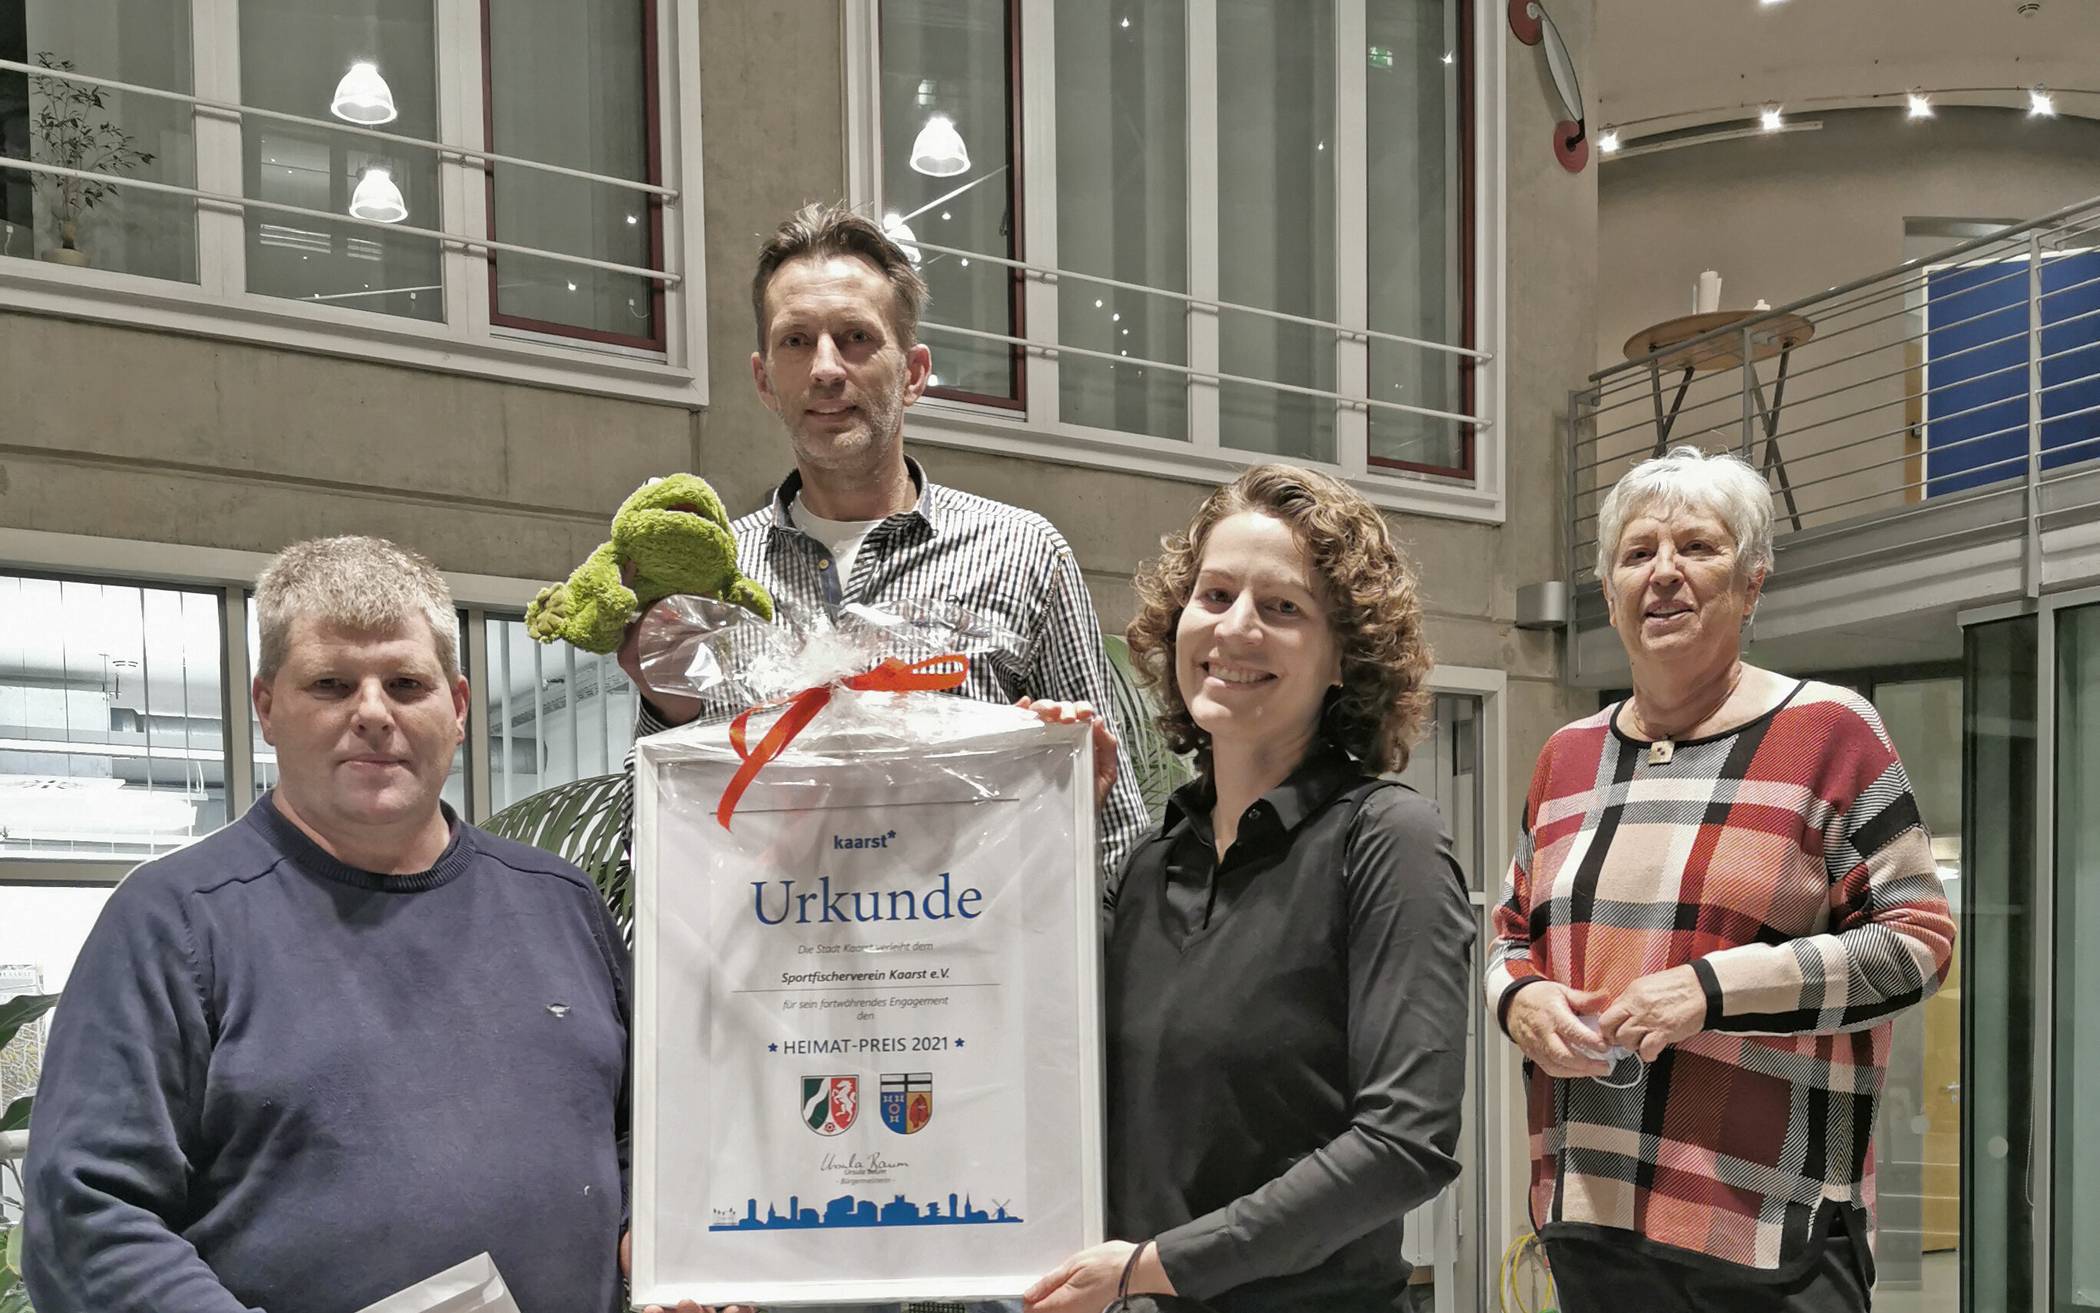  Der Heimatpreis Kaarst 2021 wurde von Bürgermeisterin Nina Lennhof an den Sportfischerverein verliehen. Foto: Stadt Kaarst 